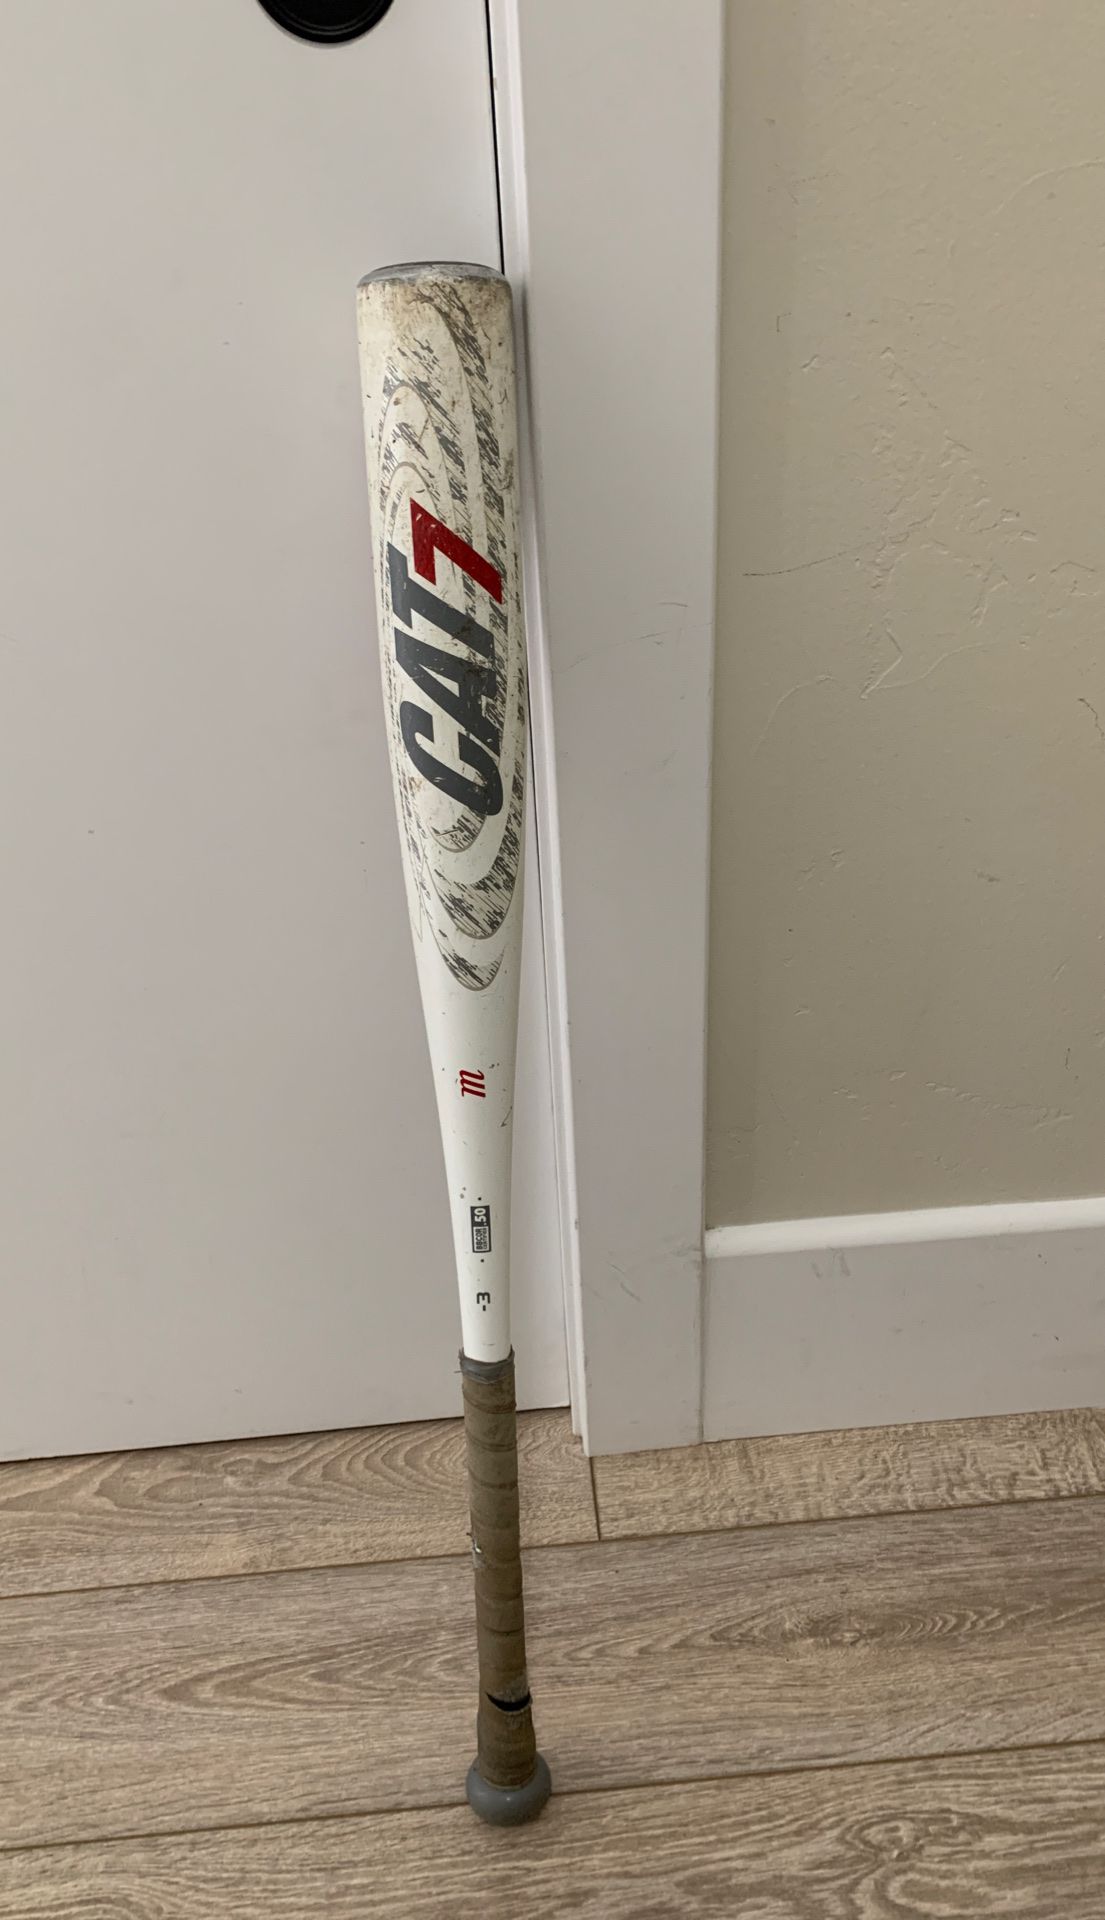 Baseball bat, marucci cat 7, size 31 inc